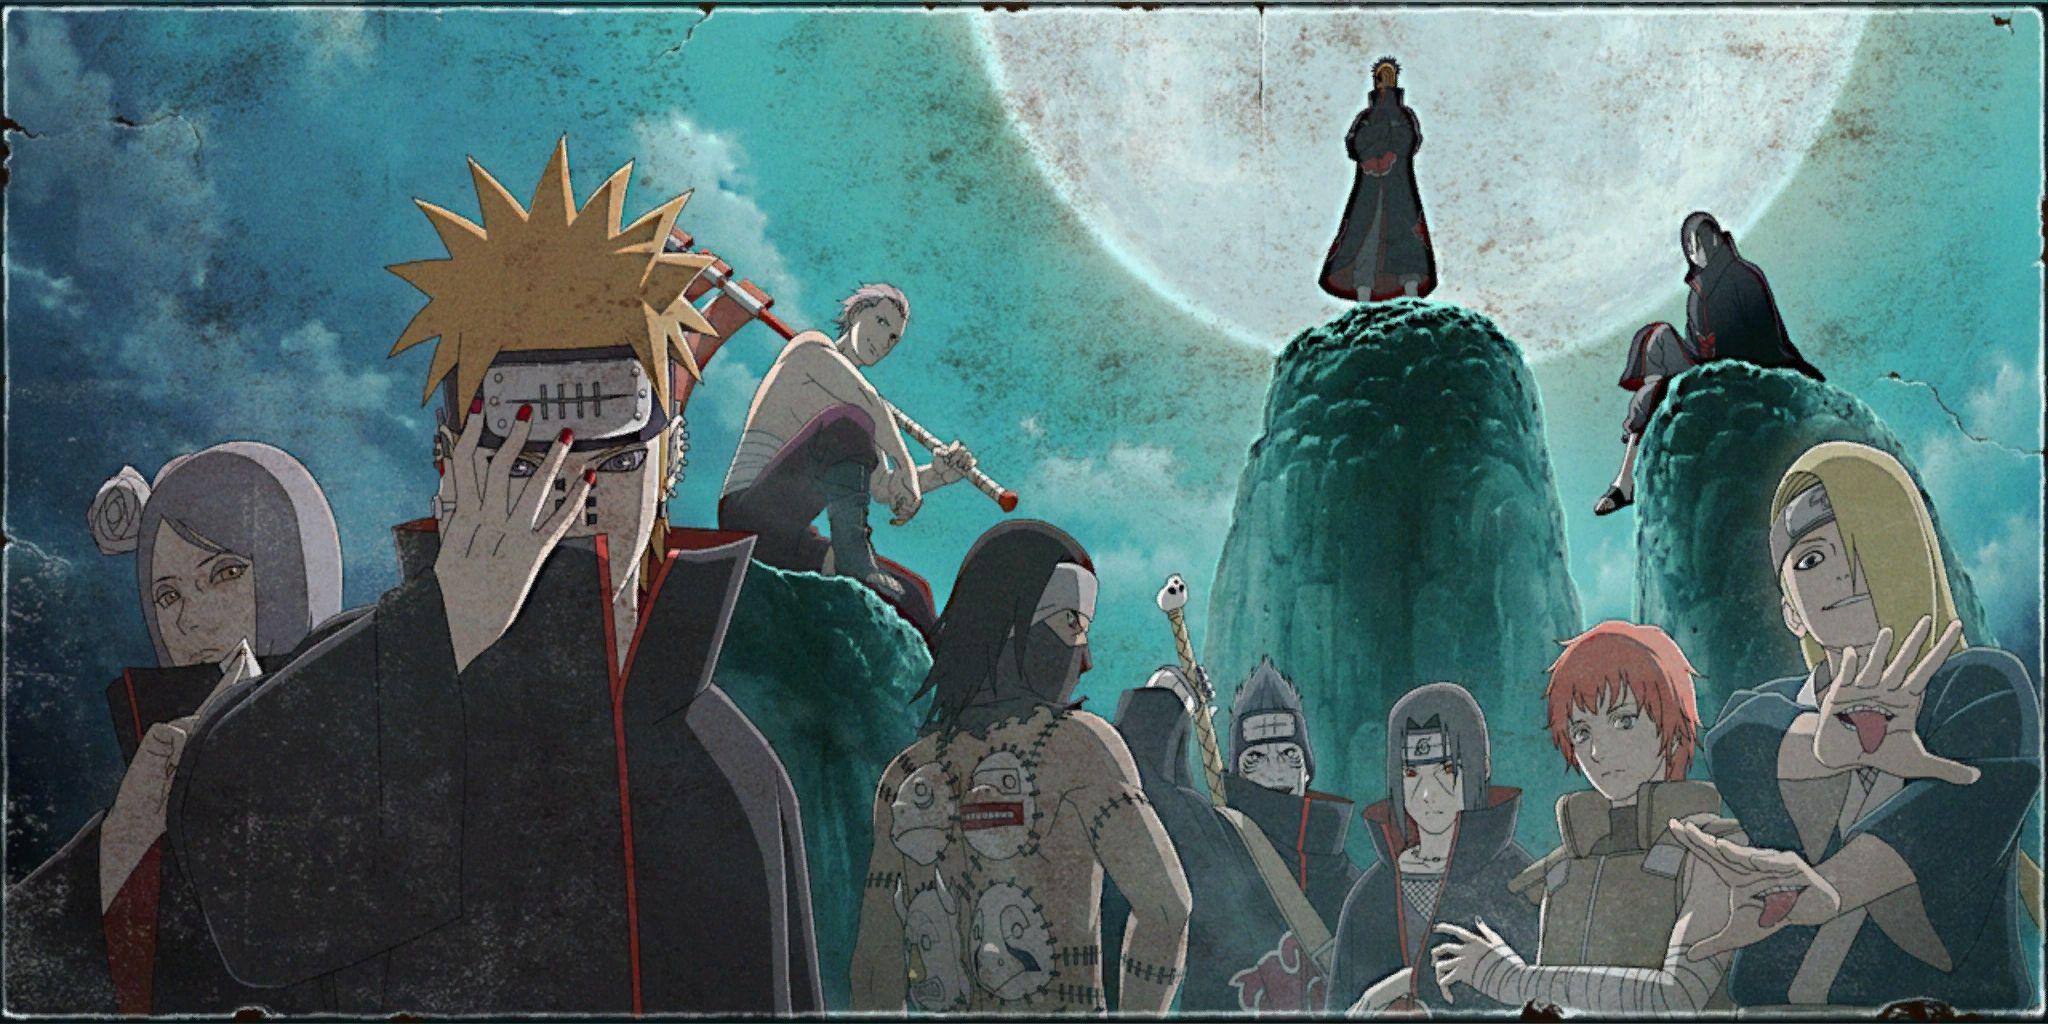 Pain (Naruto) HD Wallpaper